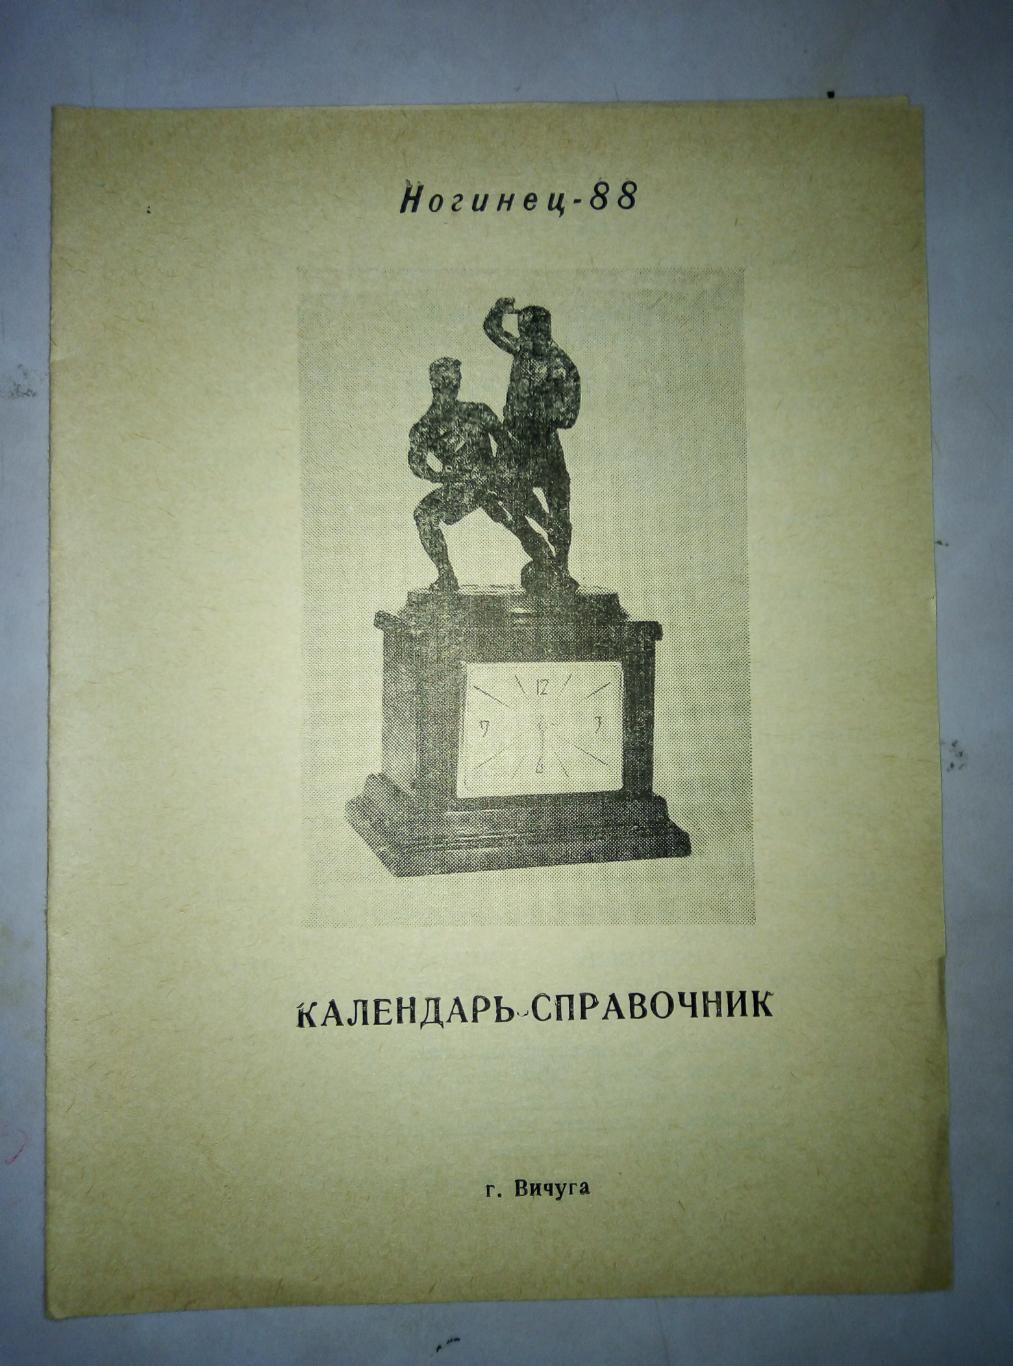 Календарь - справочник Ногинец Вичуга 1988